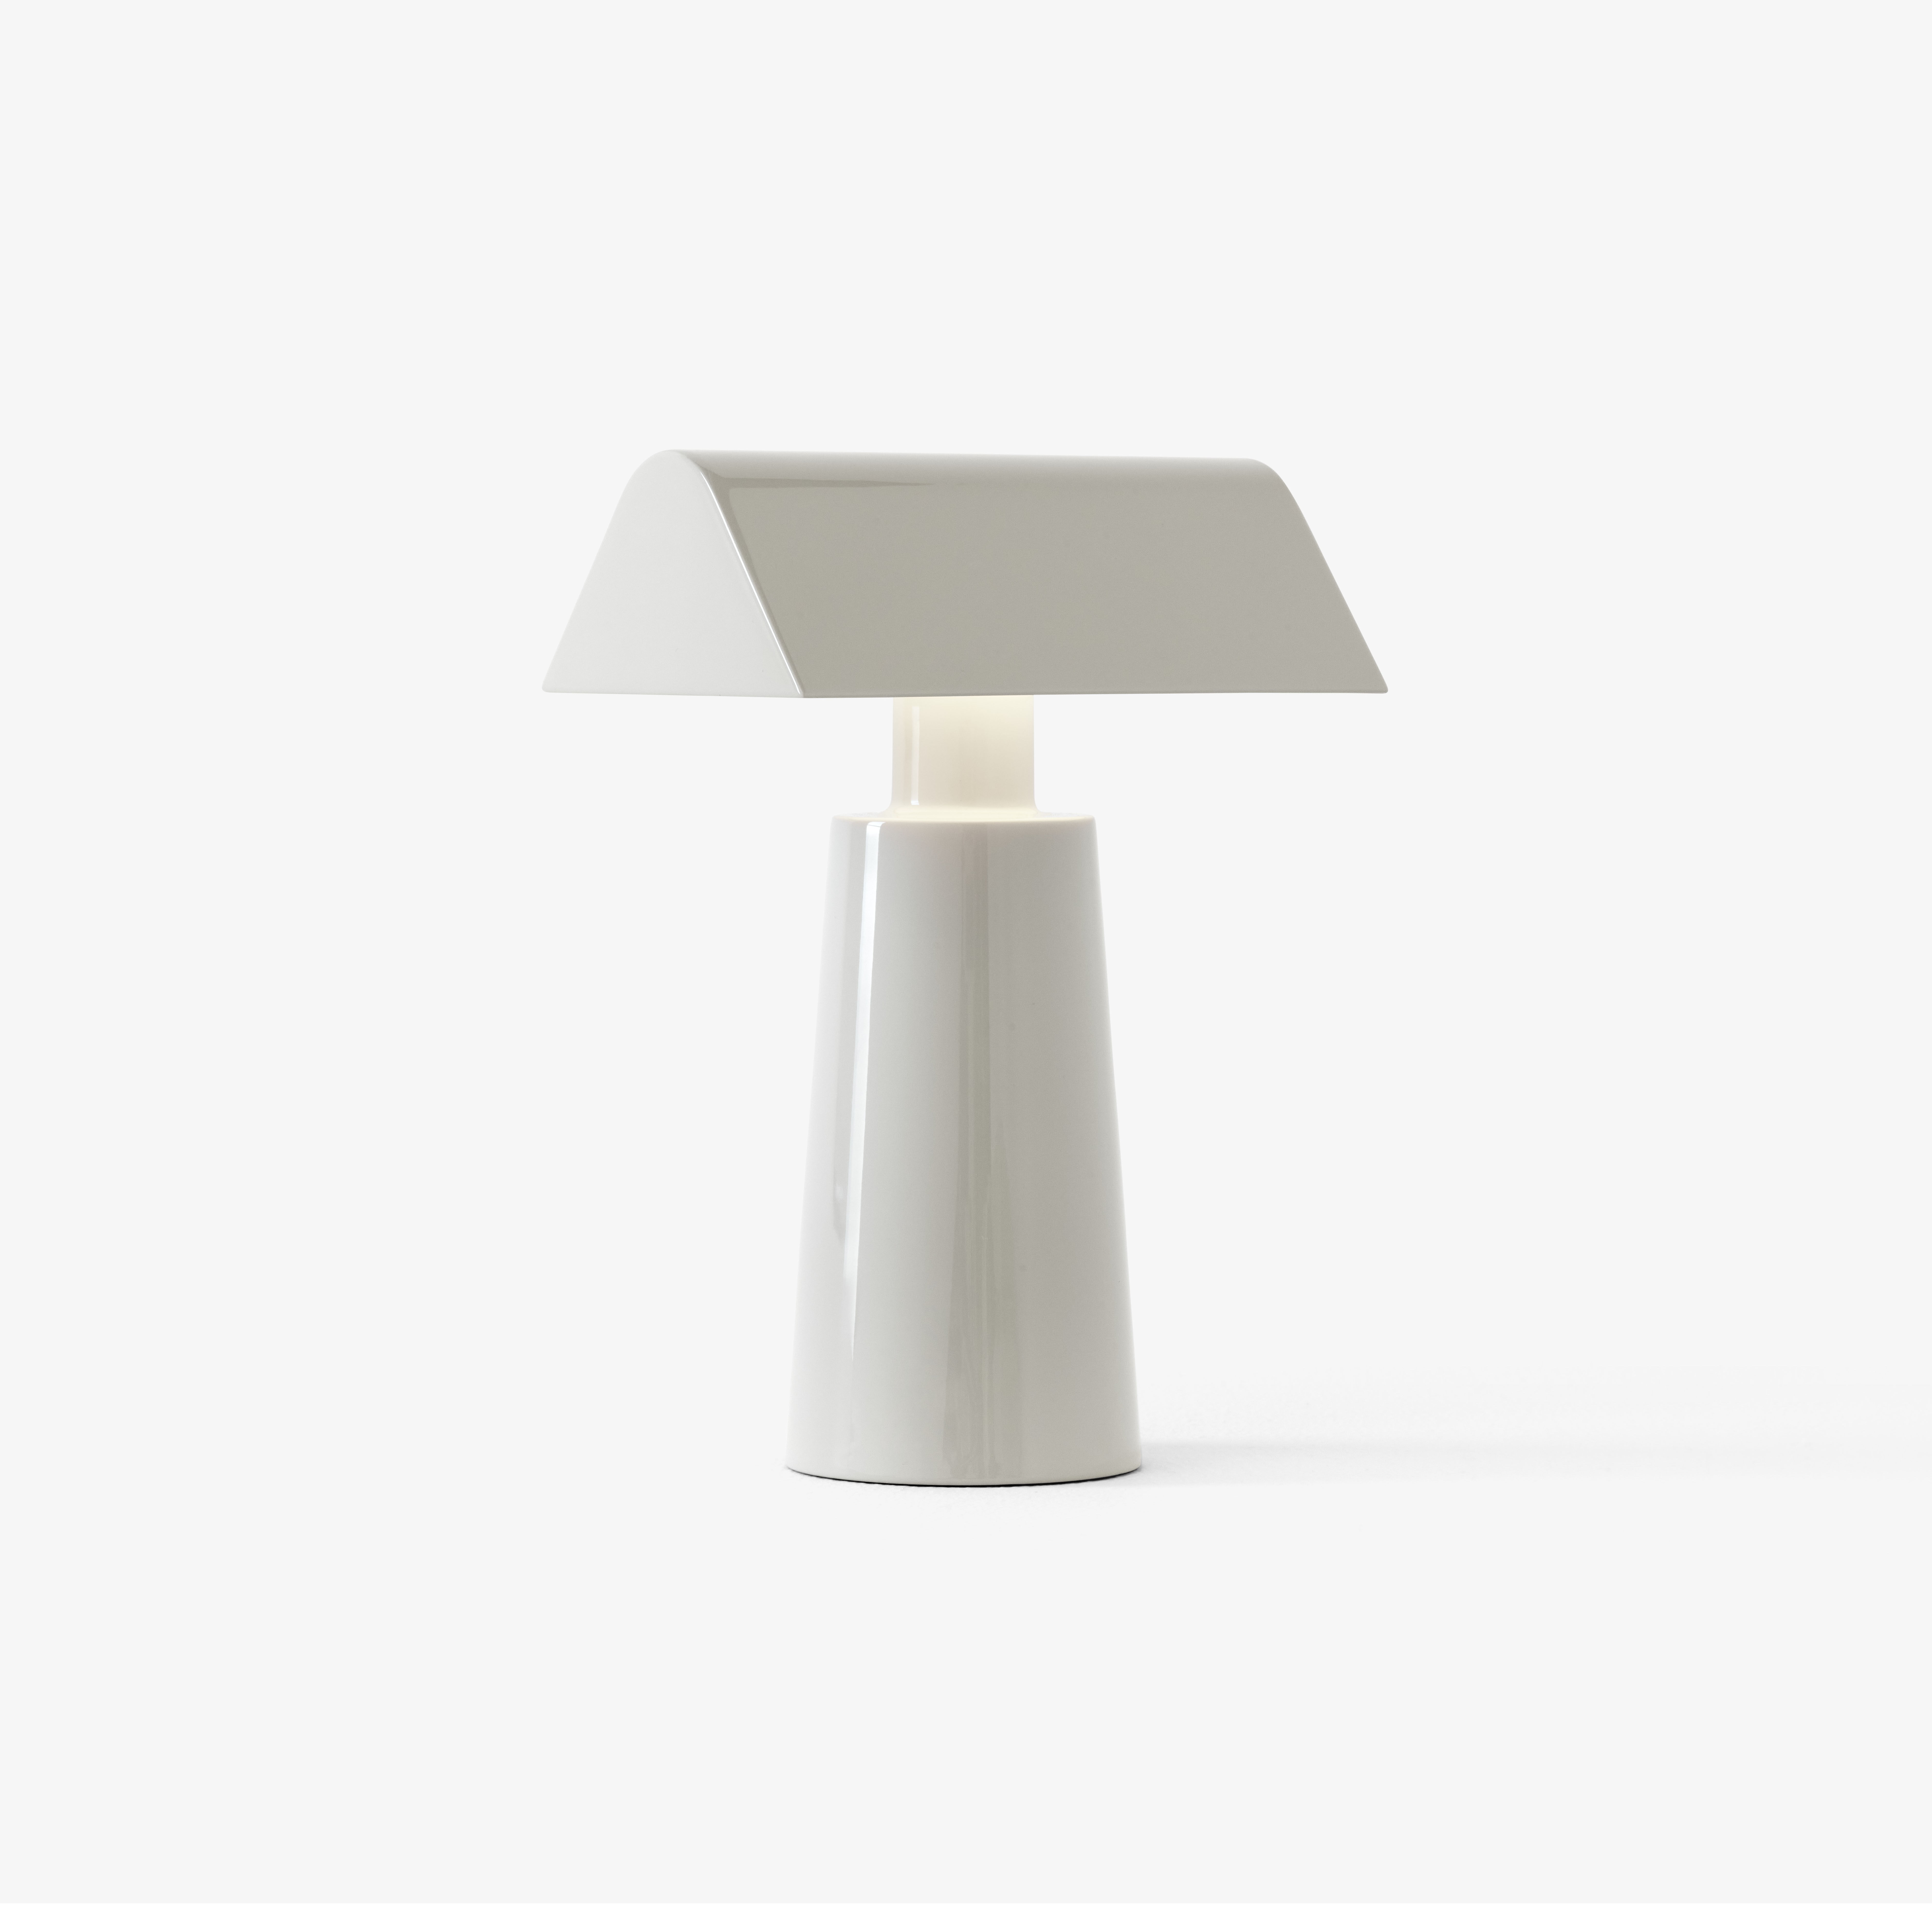 Lampe led sans fil pyramide blanche - Lux et Déco, Centre de table